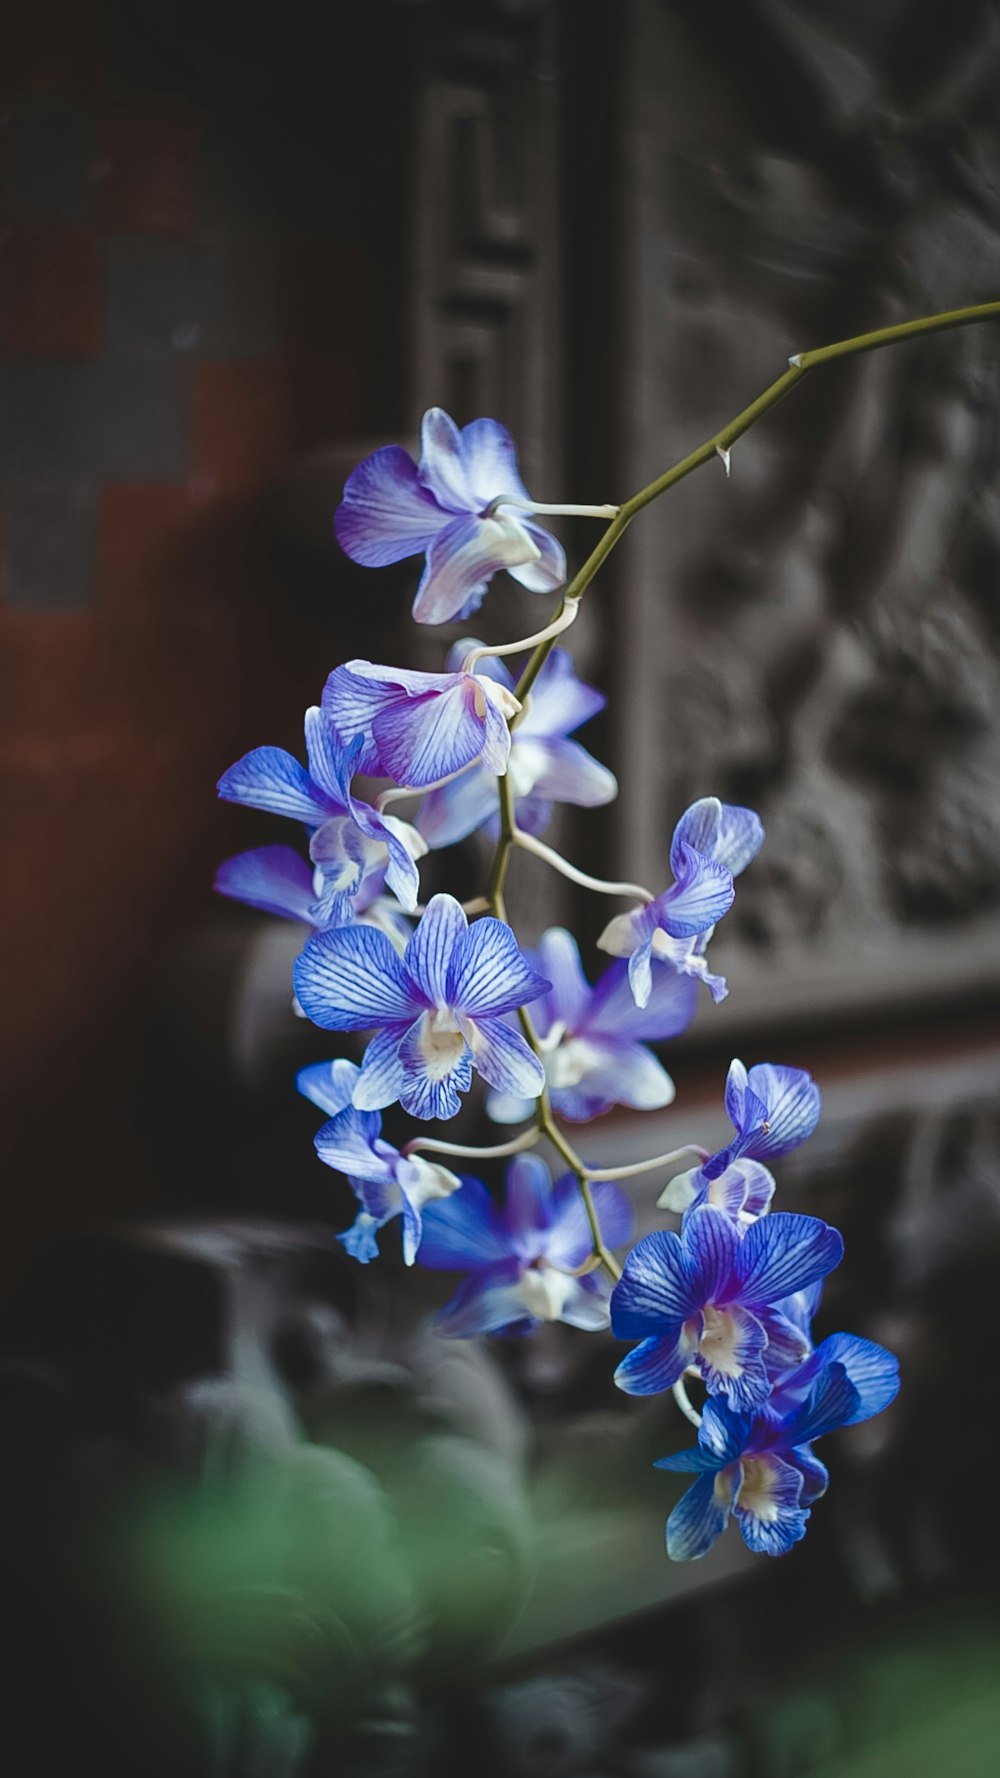 fleurs bleues et blanches dans une lentille à bascule